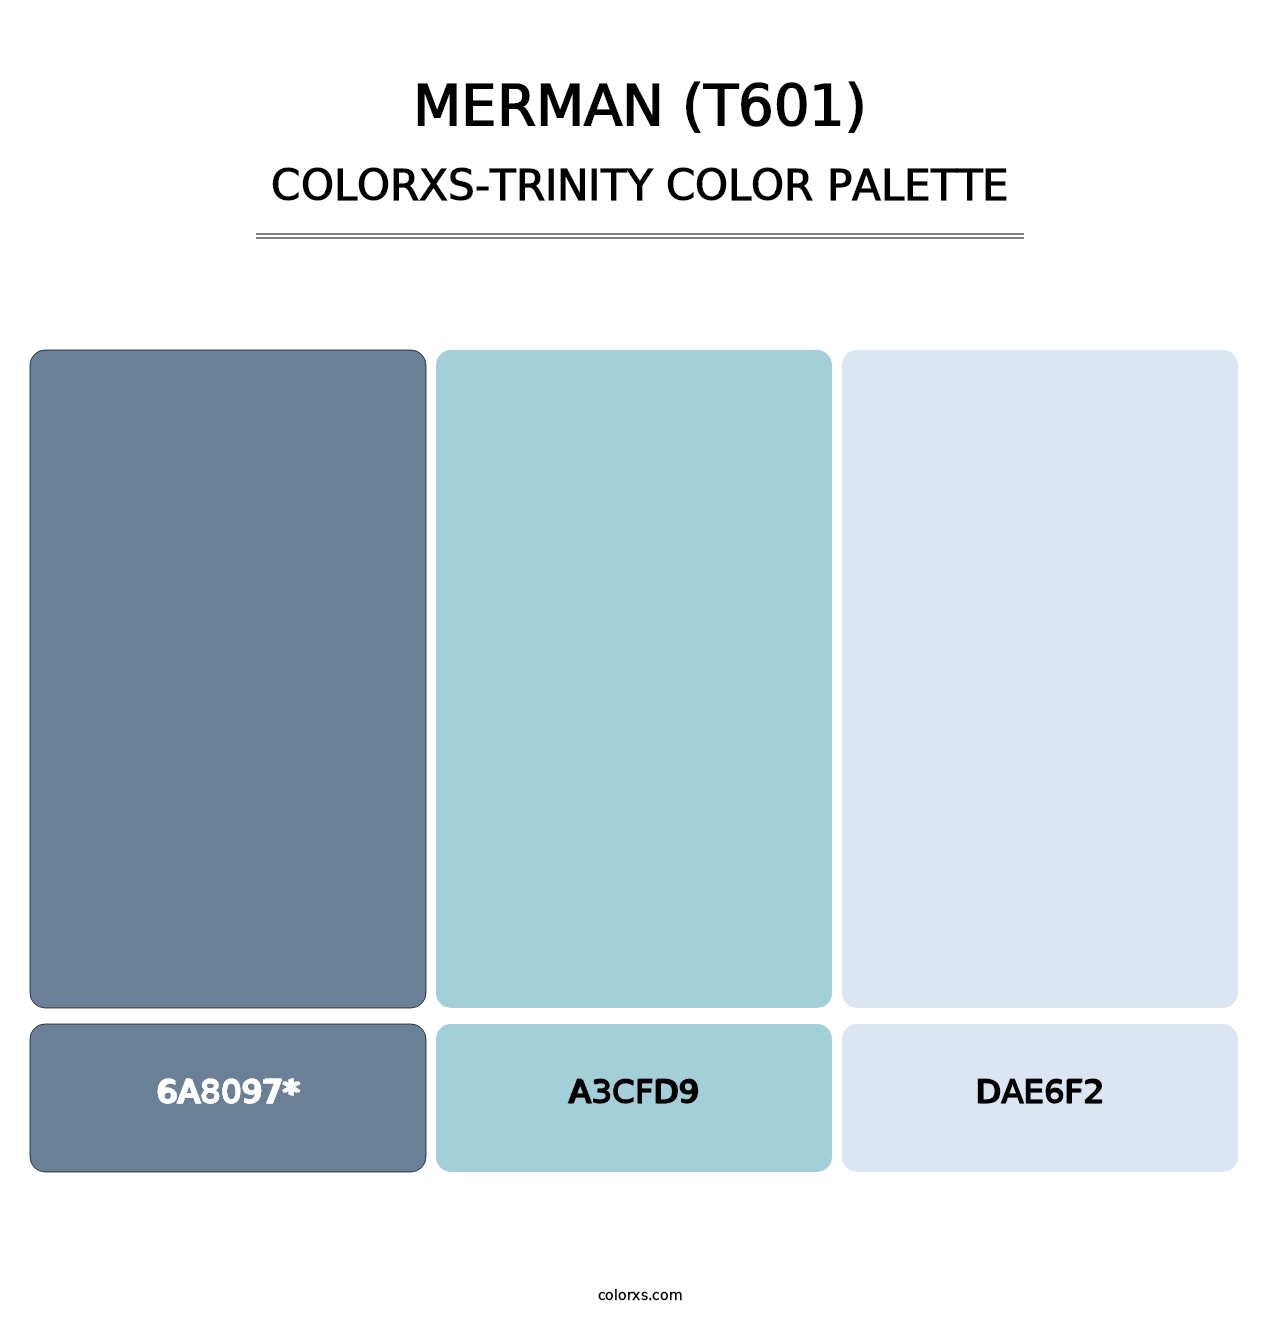 Merman (T601) - Colorxs Trinity Palette